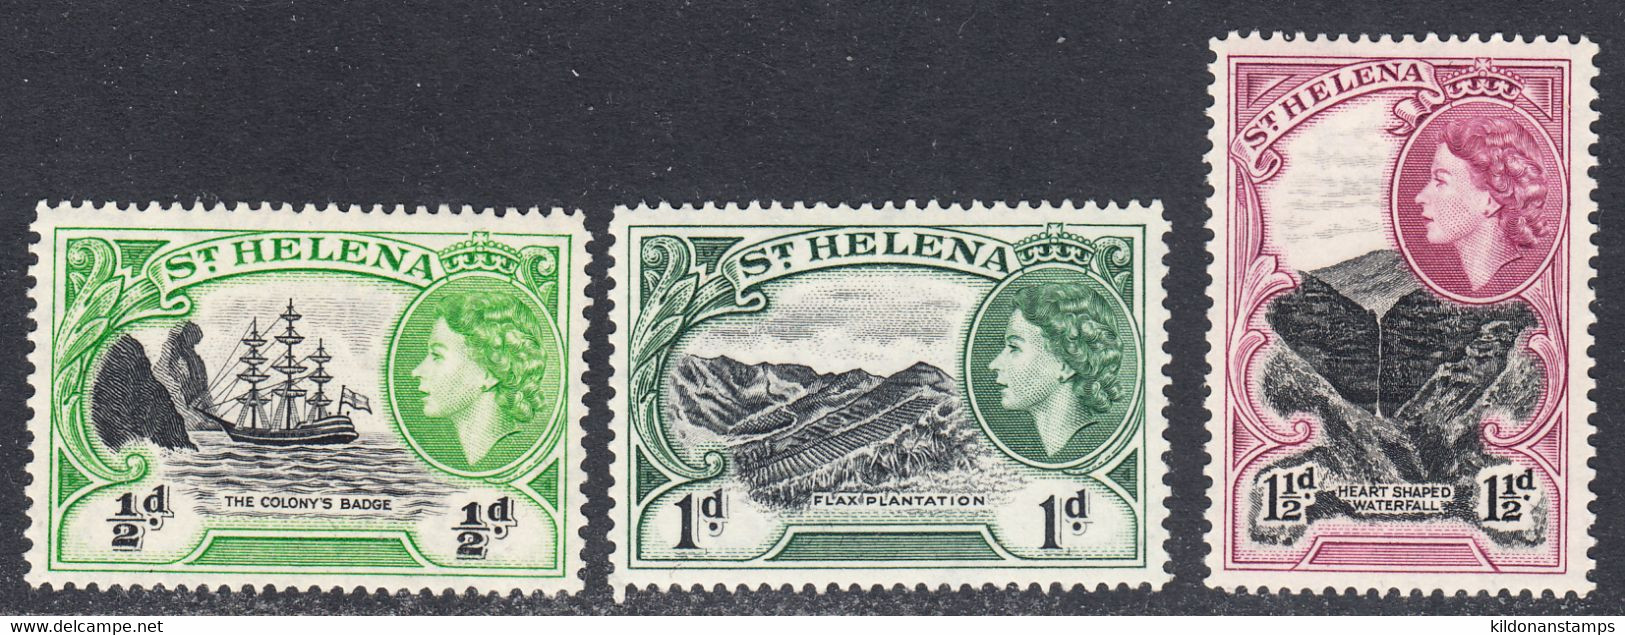 Saint Helena Island 1953-59 Mint Mounted, Sc# ,SG 153-155 - Saint Helena Island